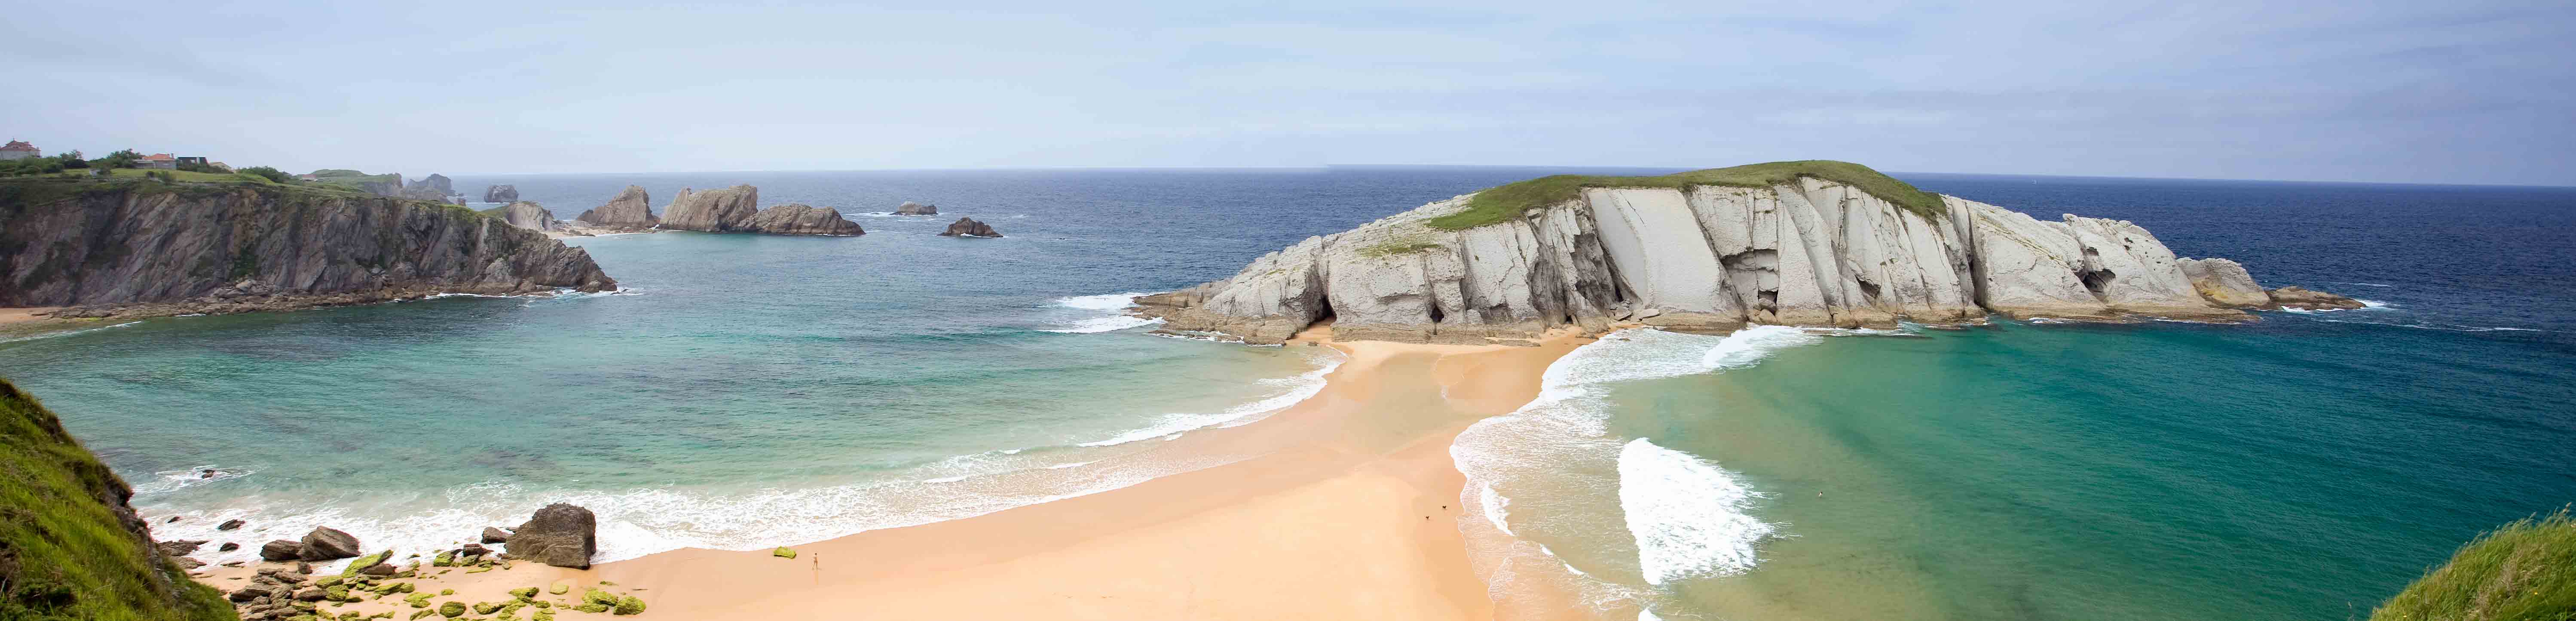 Playa de Cantabria